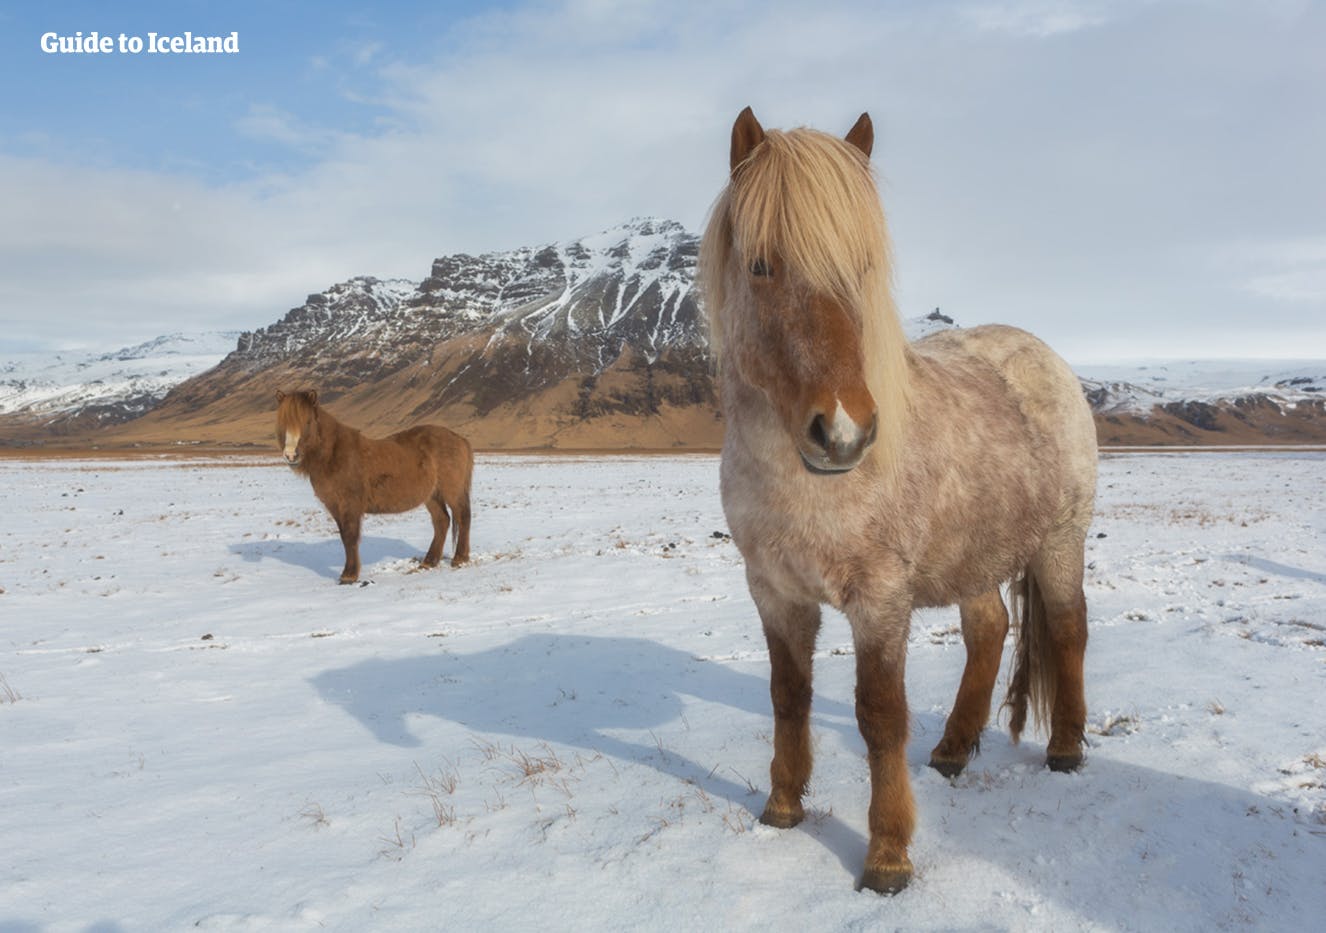 ในช่วงฤดูหนาวม้าสายพันธุ์ไอซ์แลนด์จะมีขนคลุมหนา ๆ เพื่อป้องกันตัวเองจากความหนาวเย็น.